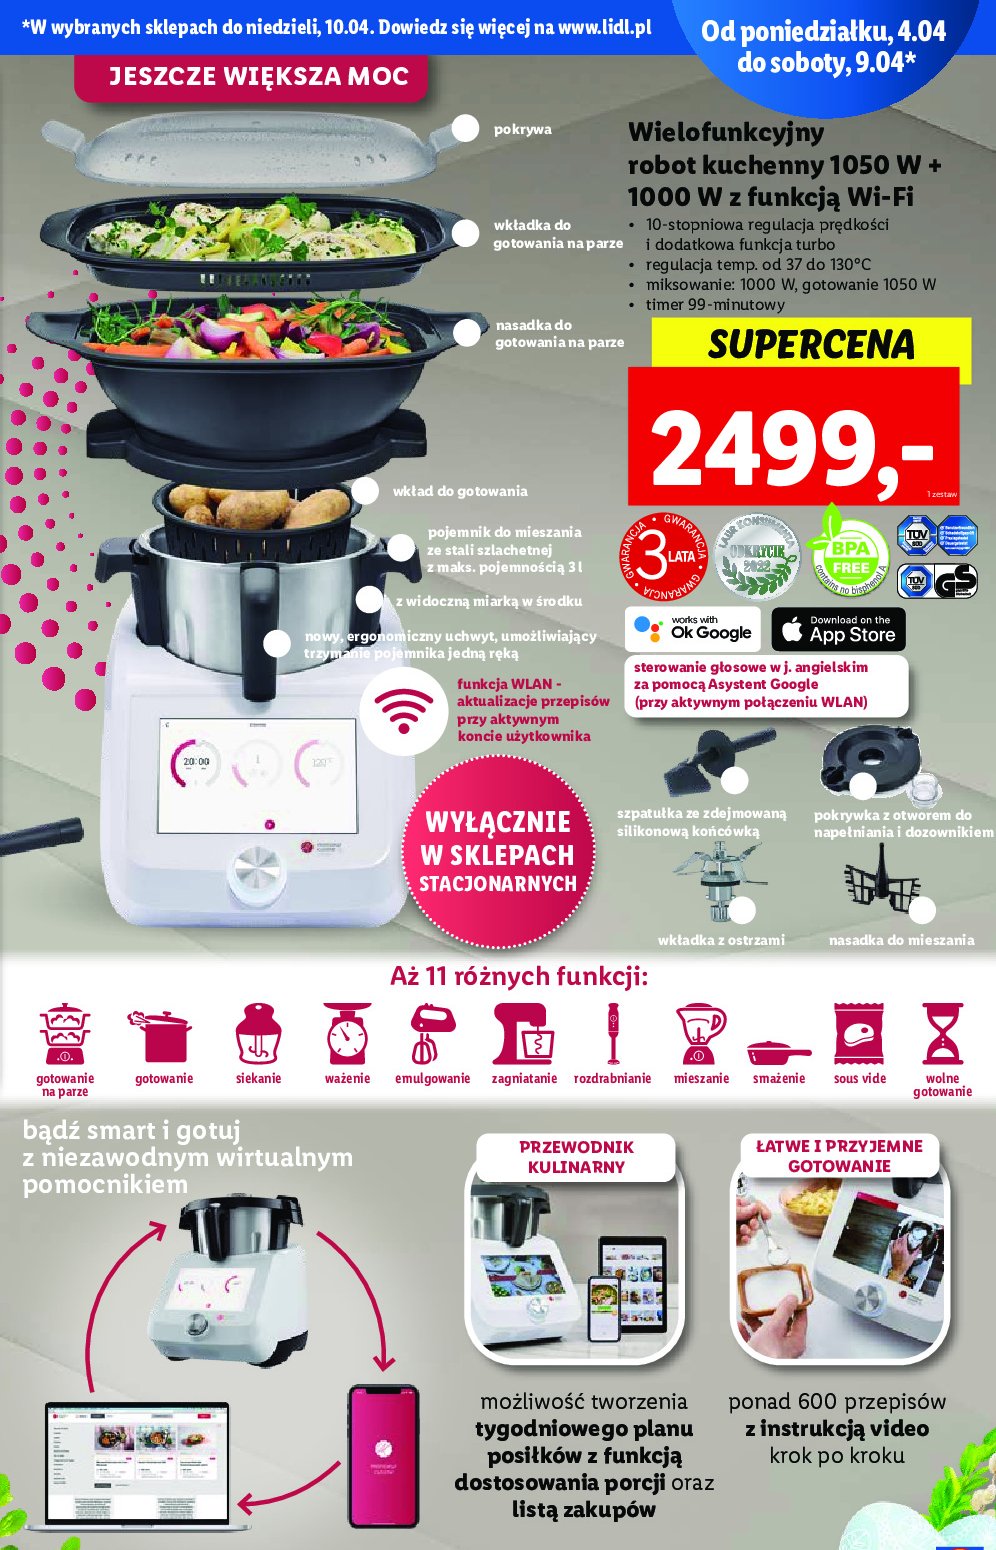 Robot kuchenny monsieur cuisine connect 1000w Silvercrest promocja